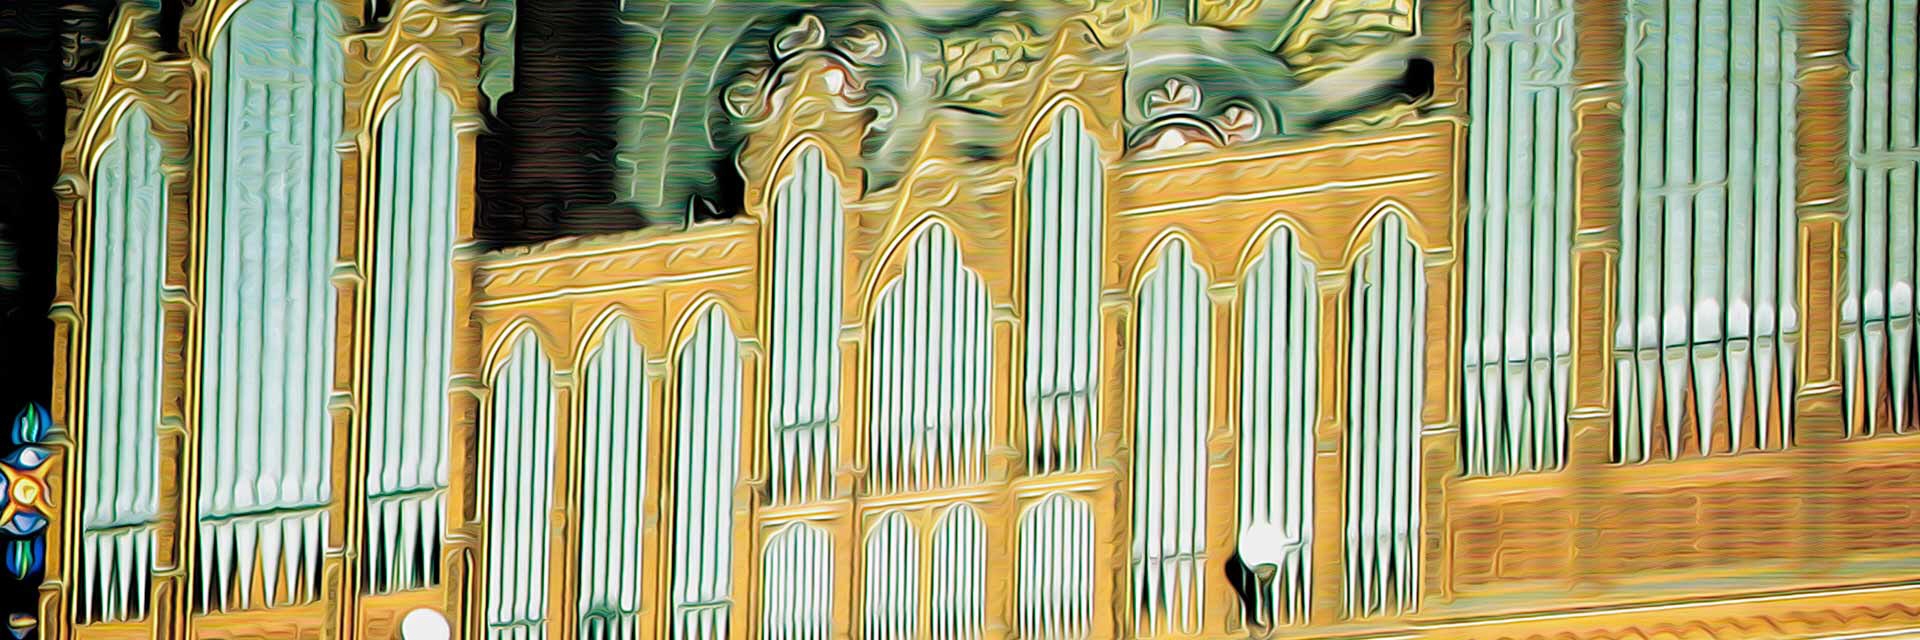 Walcker-Orgel in Strasbourg St. Paul